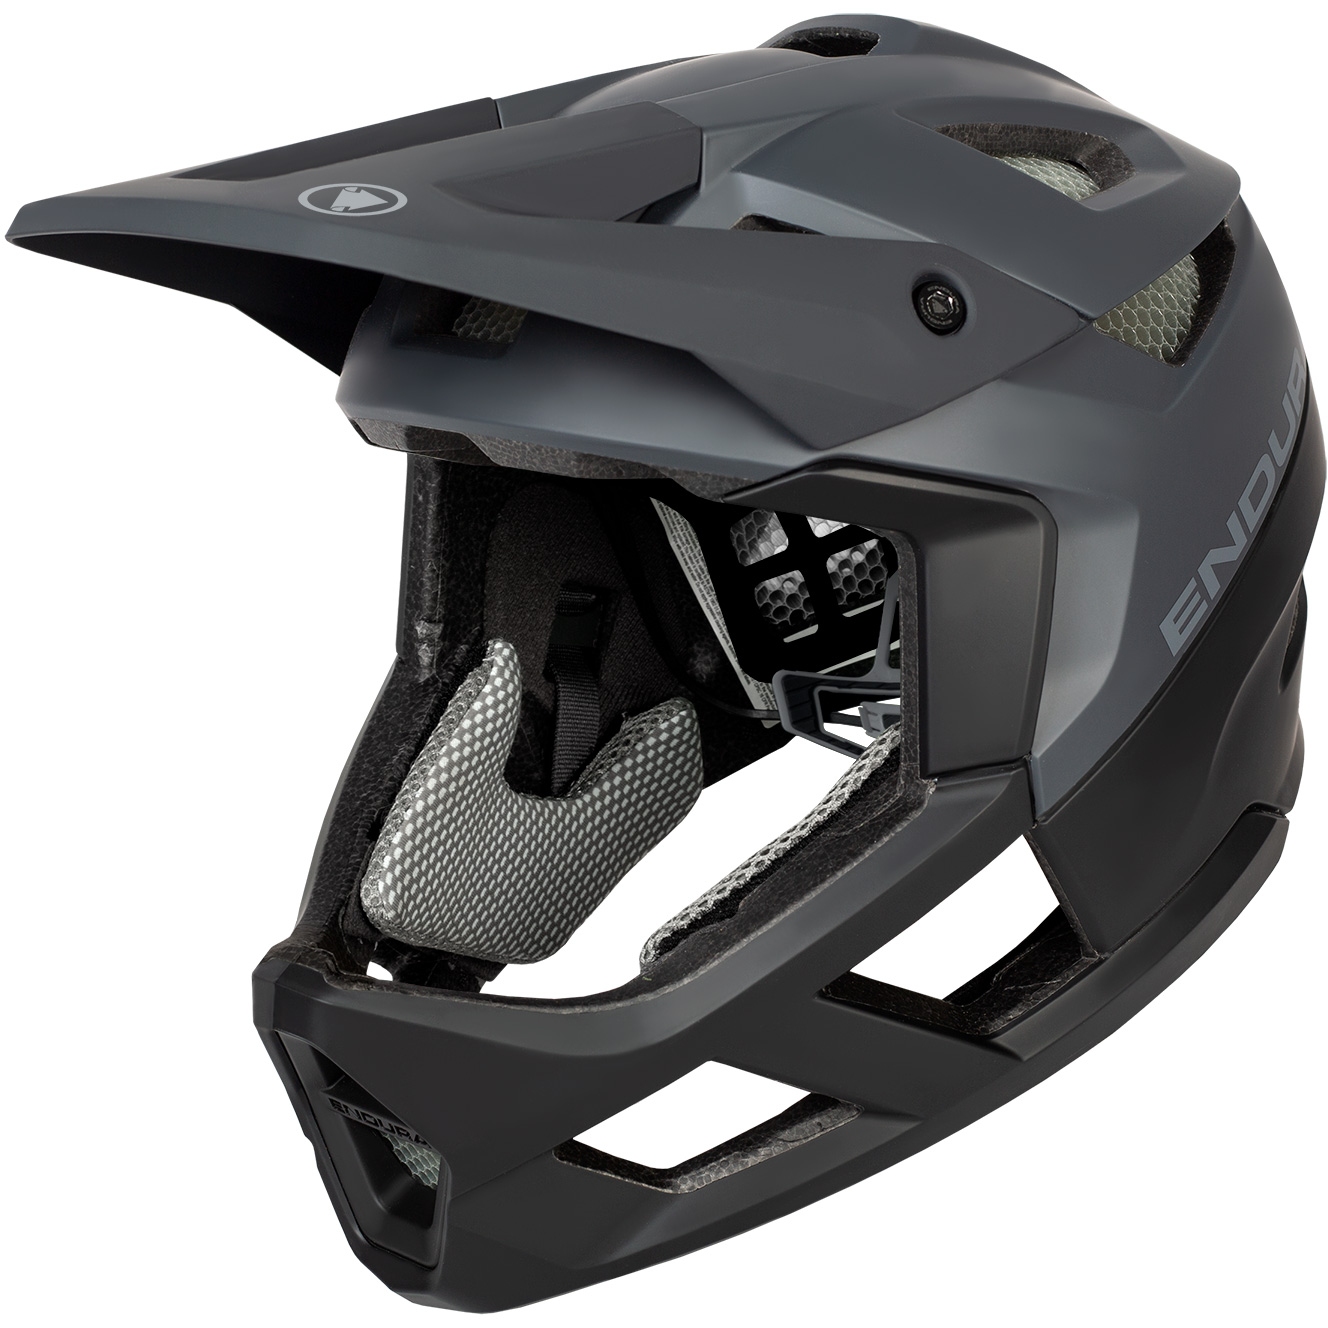 Produktbild von Endura MT500 MIPS Full Face Helm - schwarz